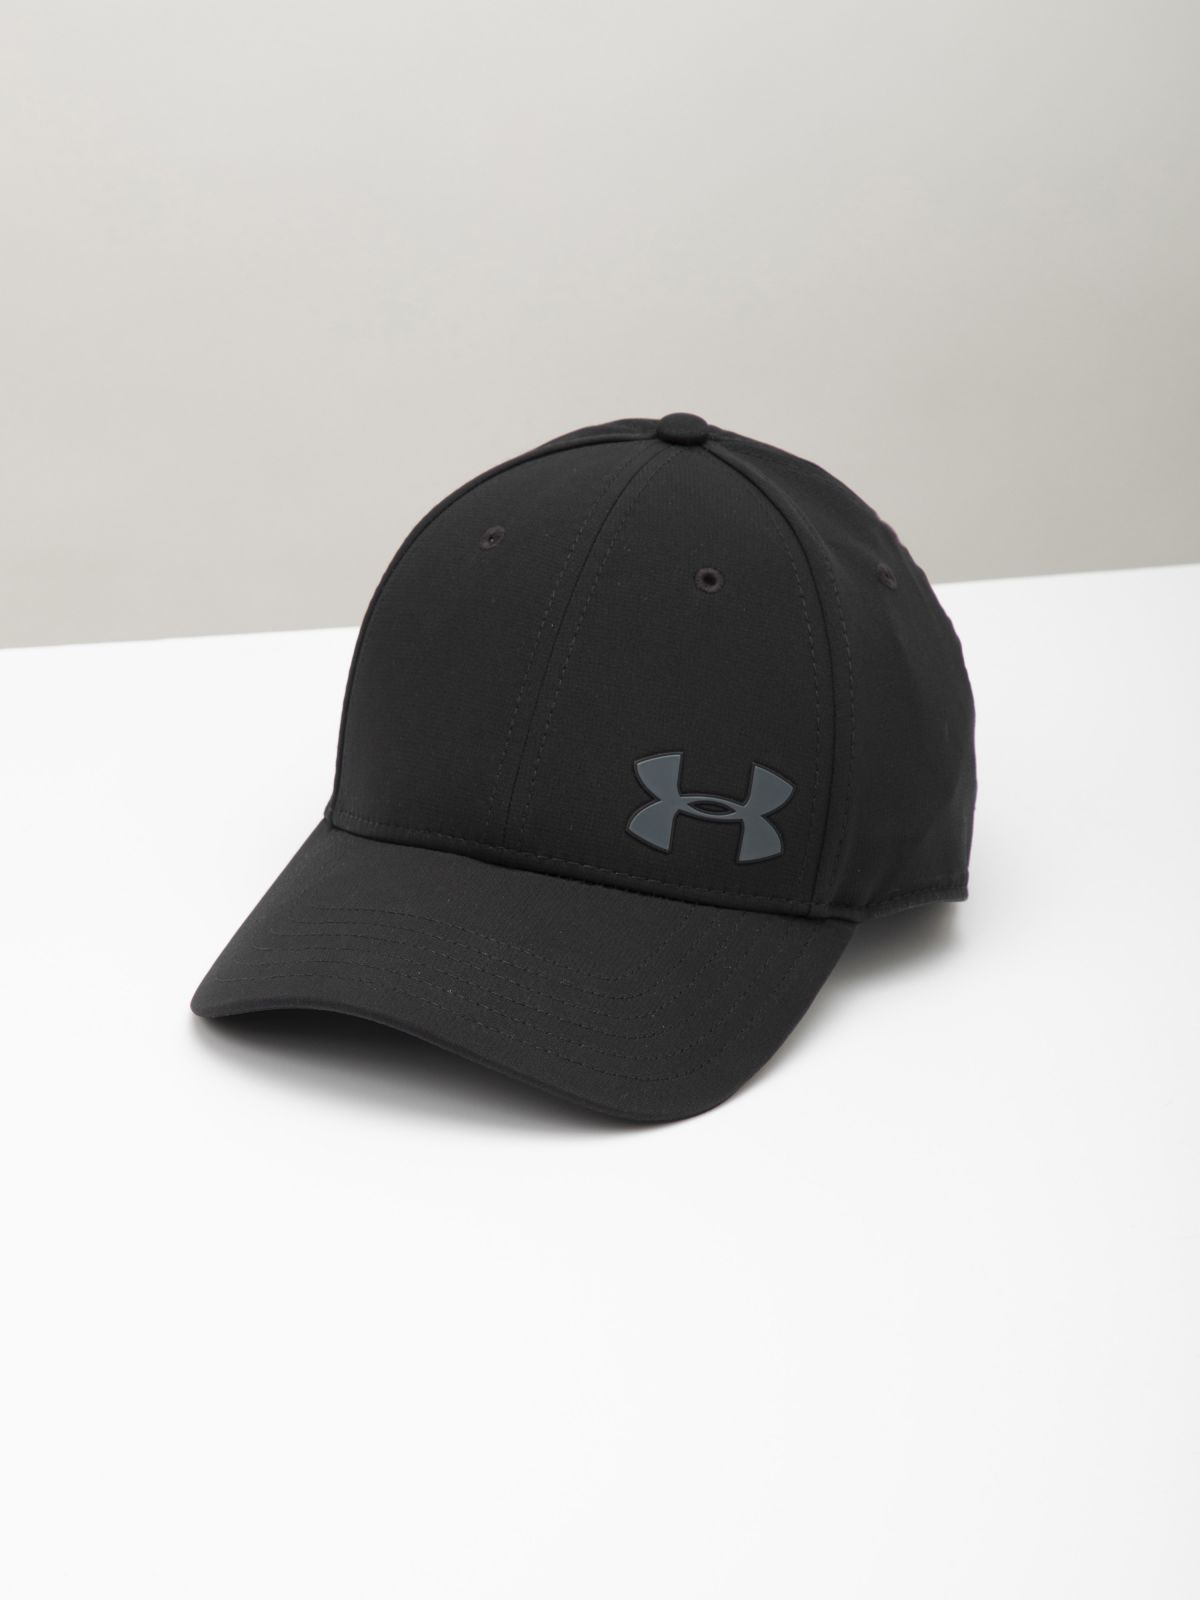  כובע מצחייה עם פאץ' לוגו של UNDER ARMOUR